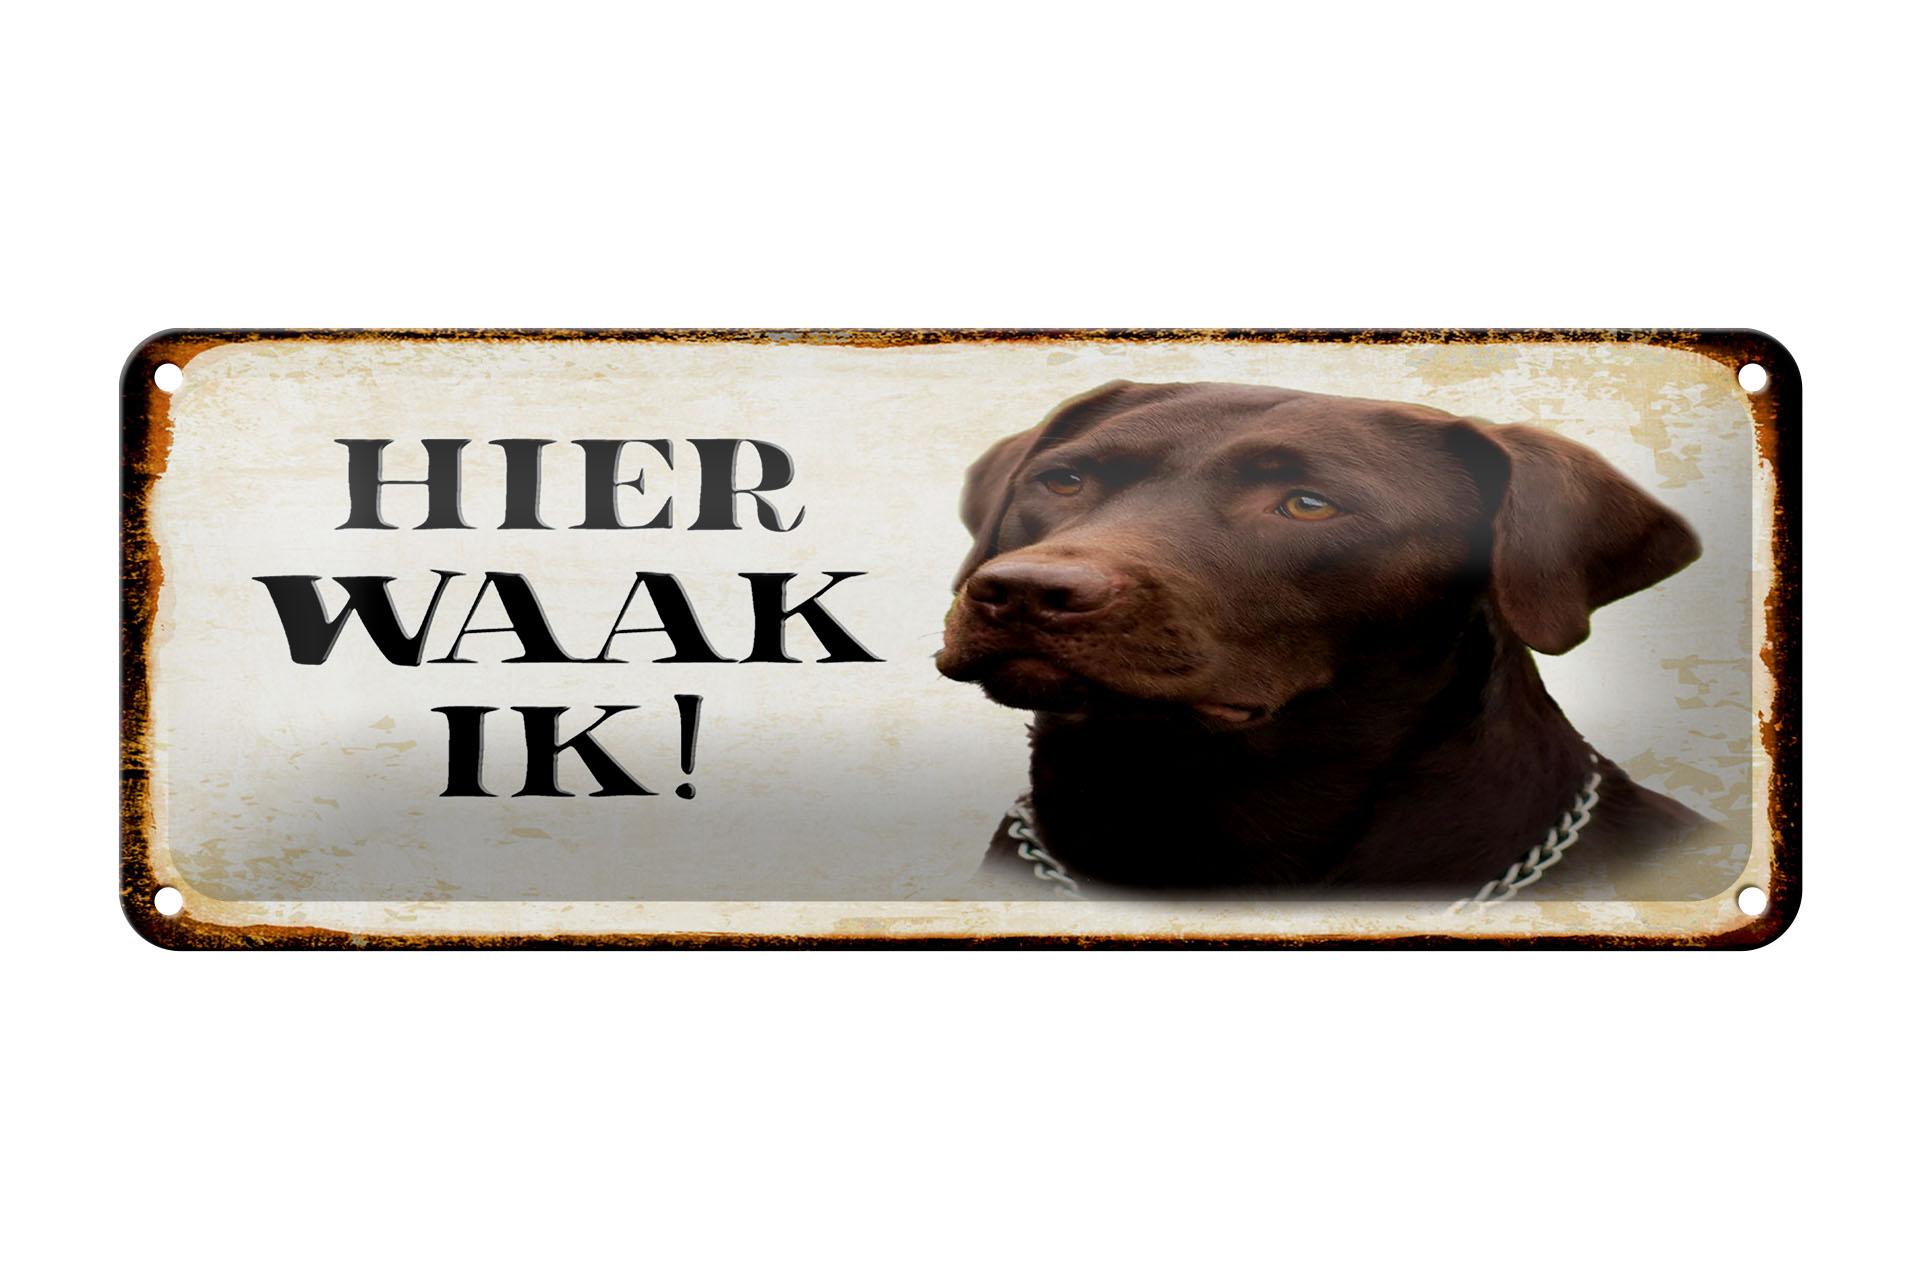 Blechschild Spruch 27x10 cm holländisch Hier Waak ik brauner Labrador Schild